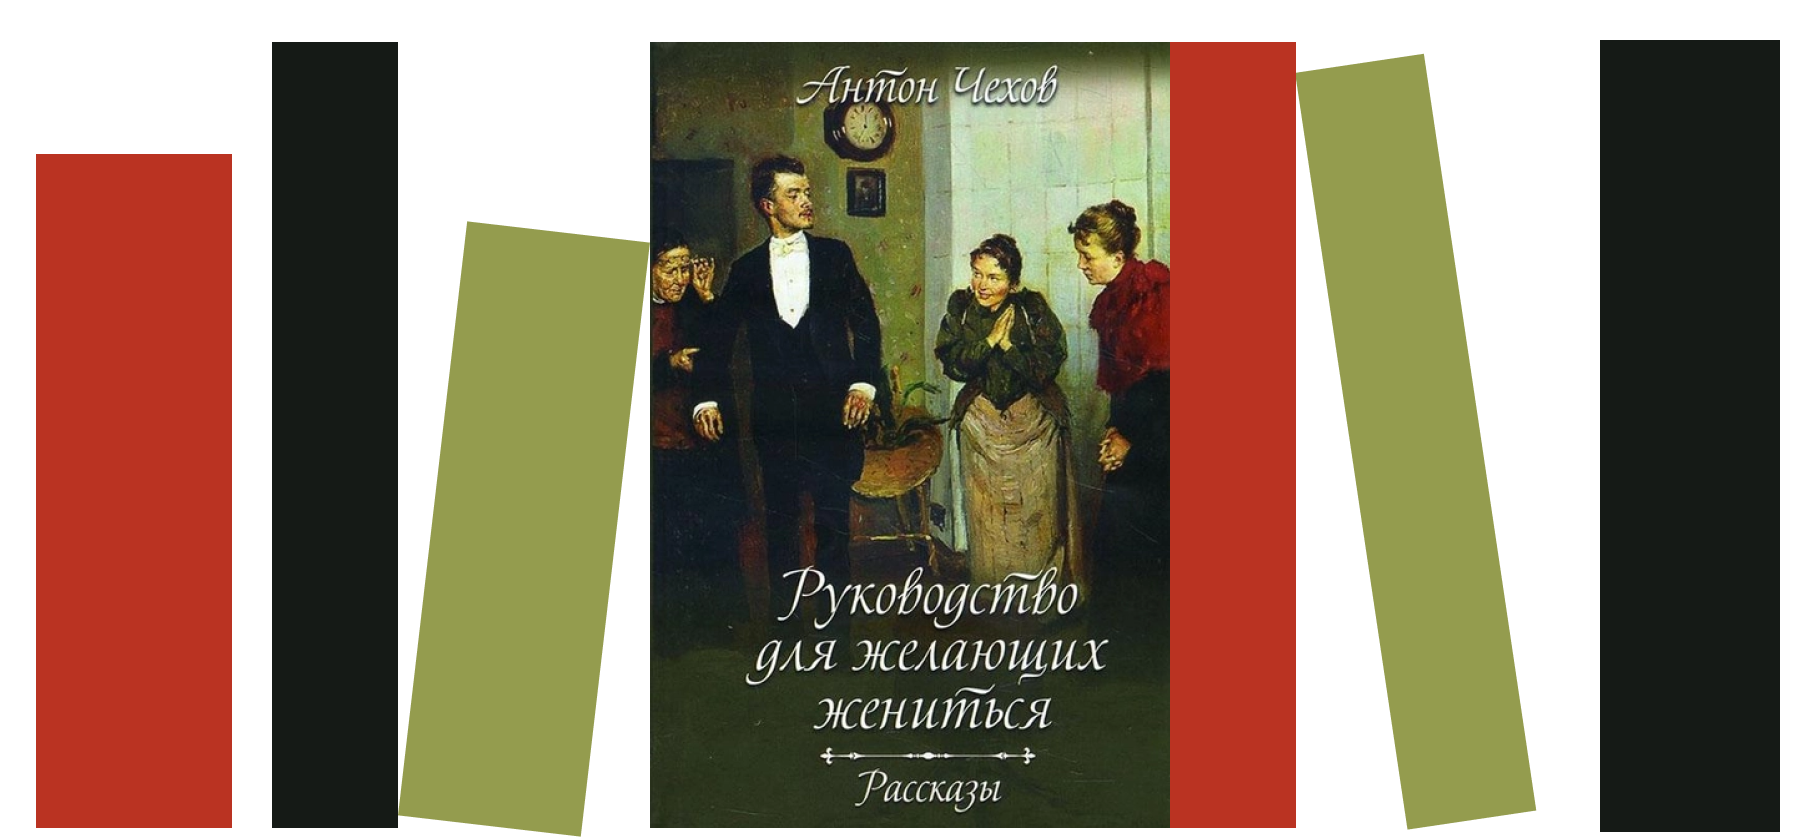 «Книга-антистресс»: рекомендую «Руководство для желающих жениться» Антона Чехова